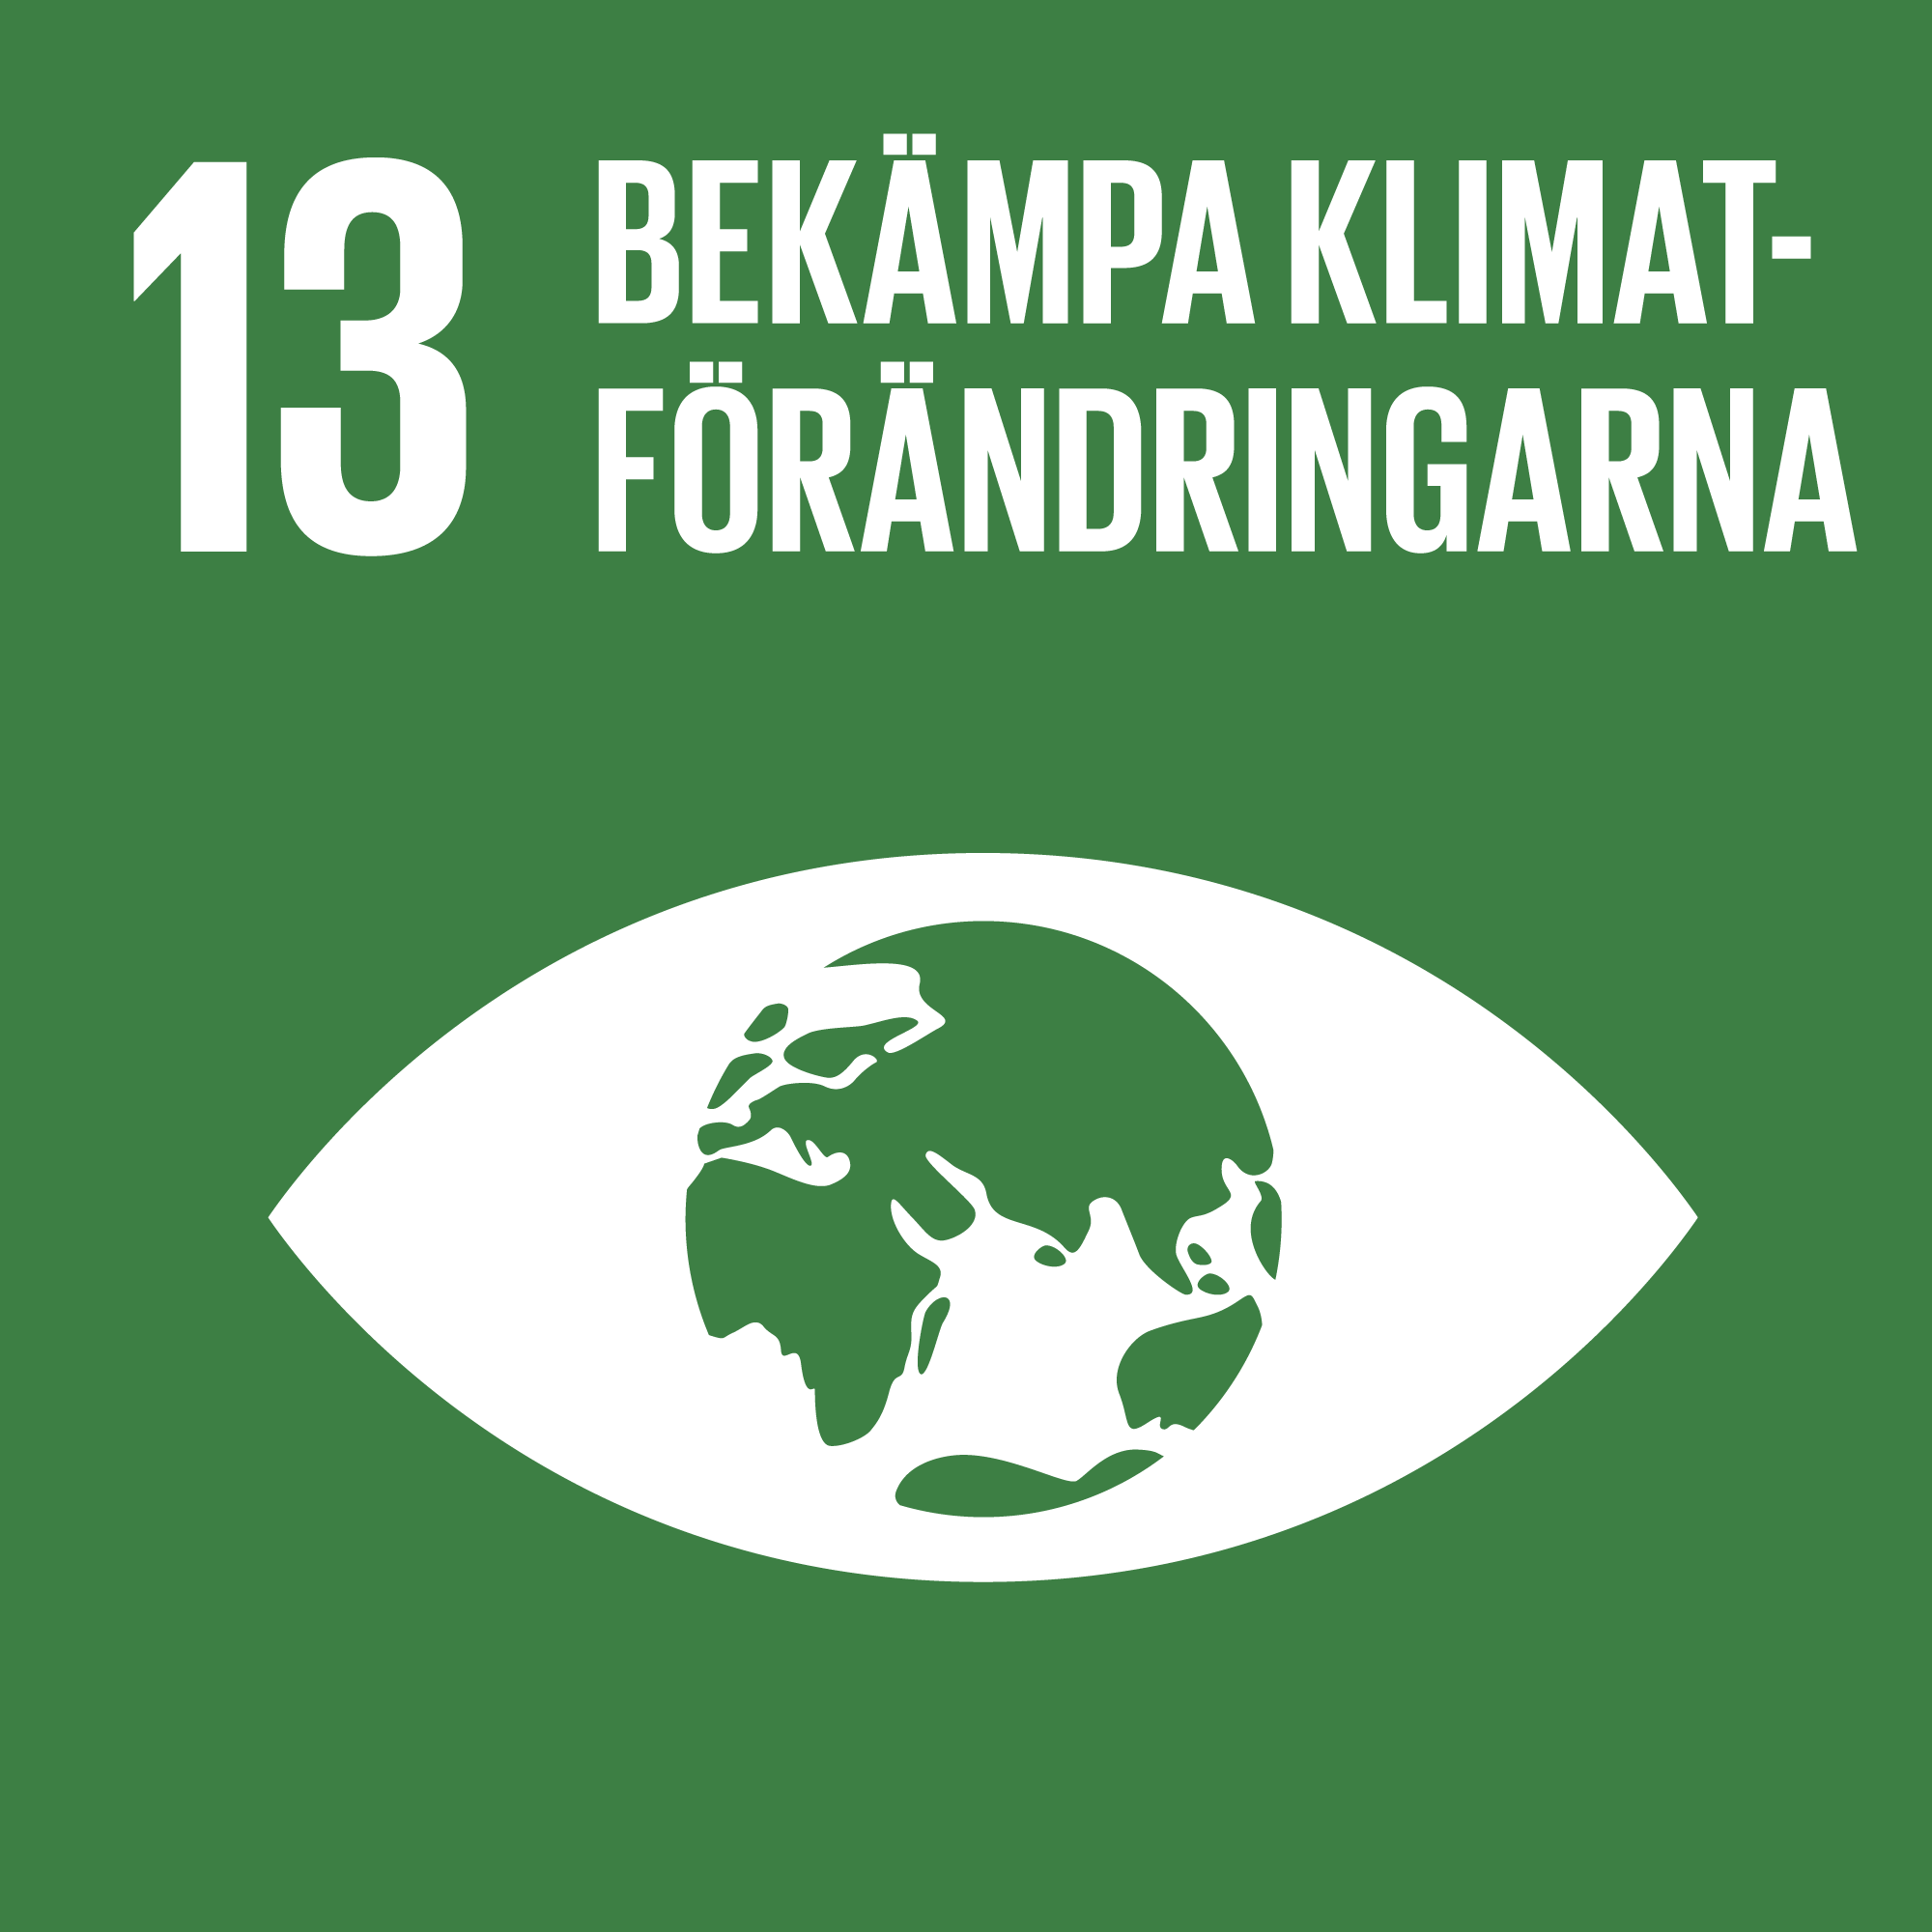 13-bekampa-klimatforandringarna-logo.png